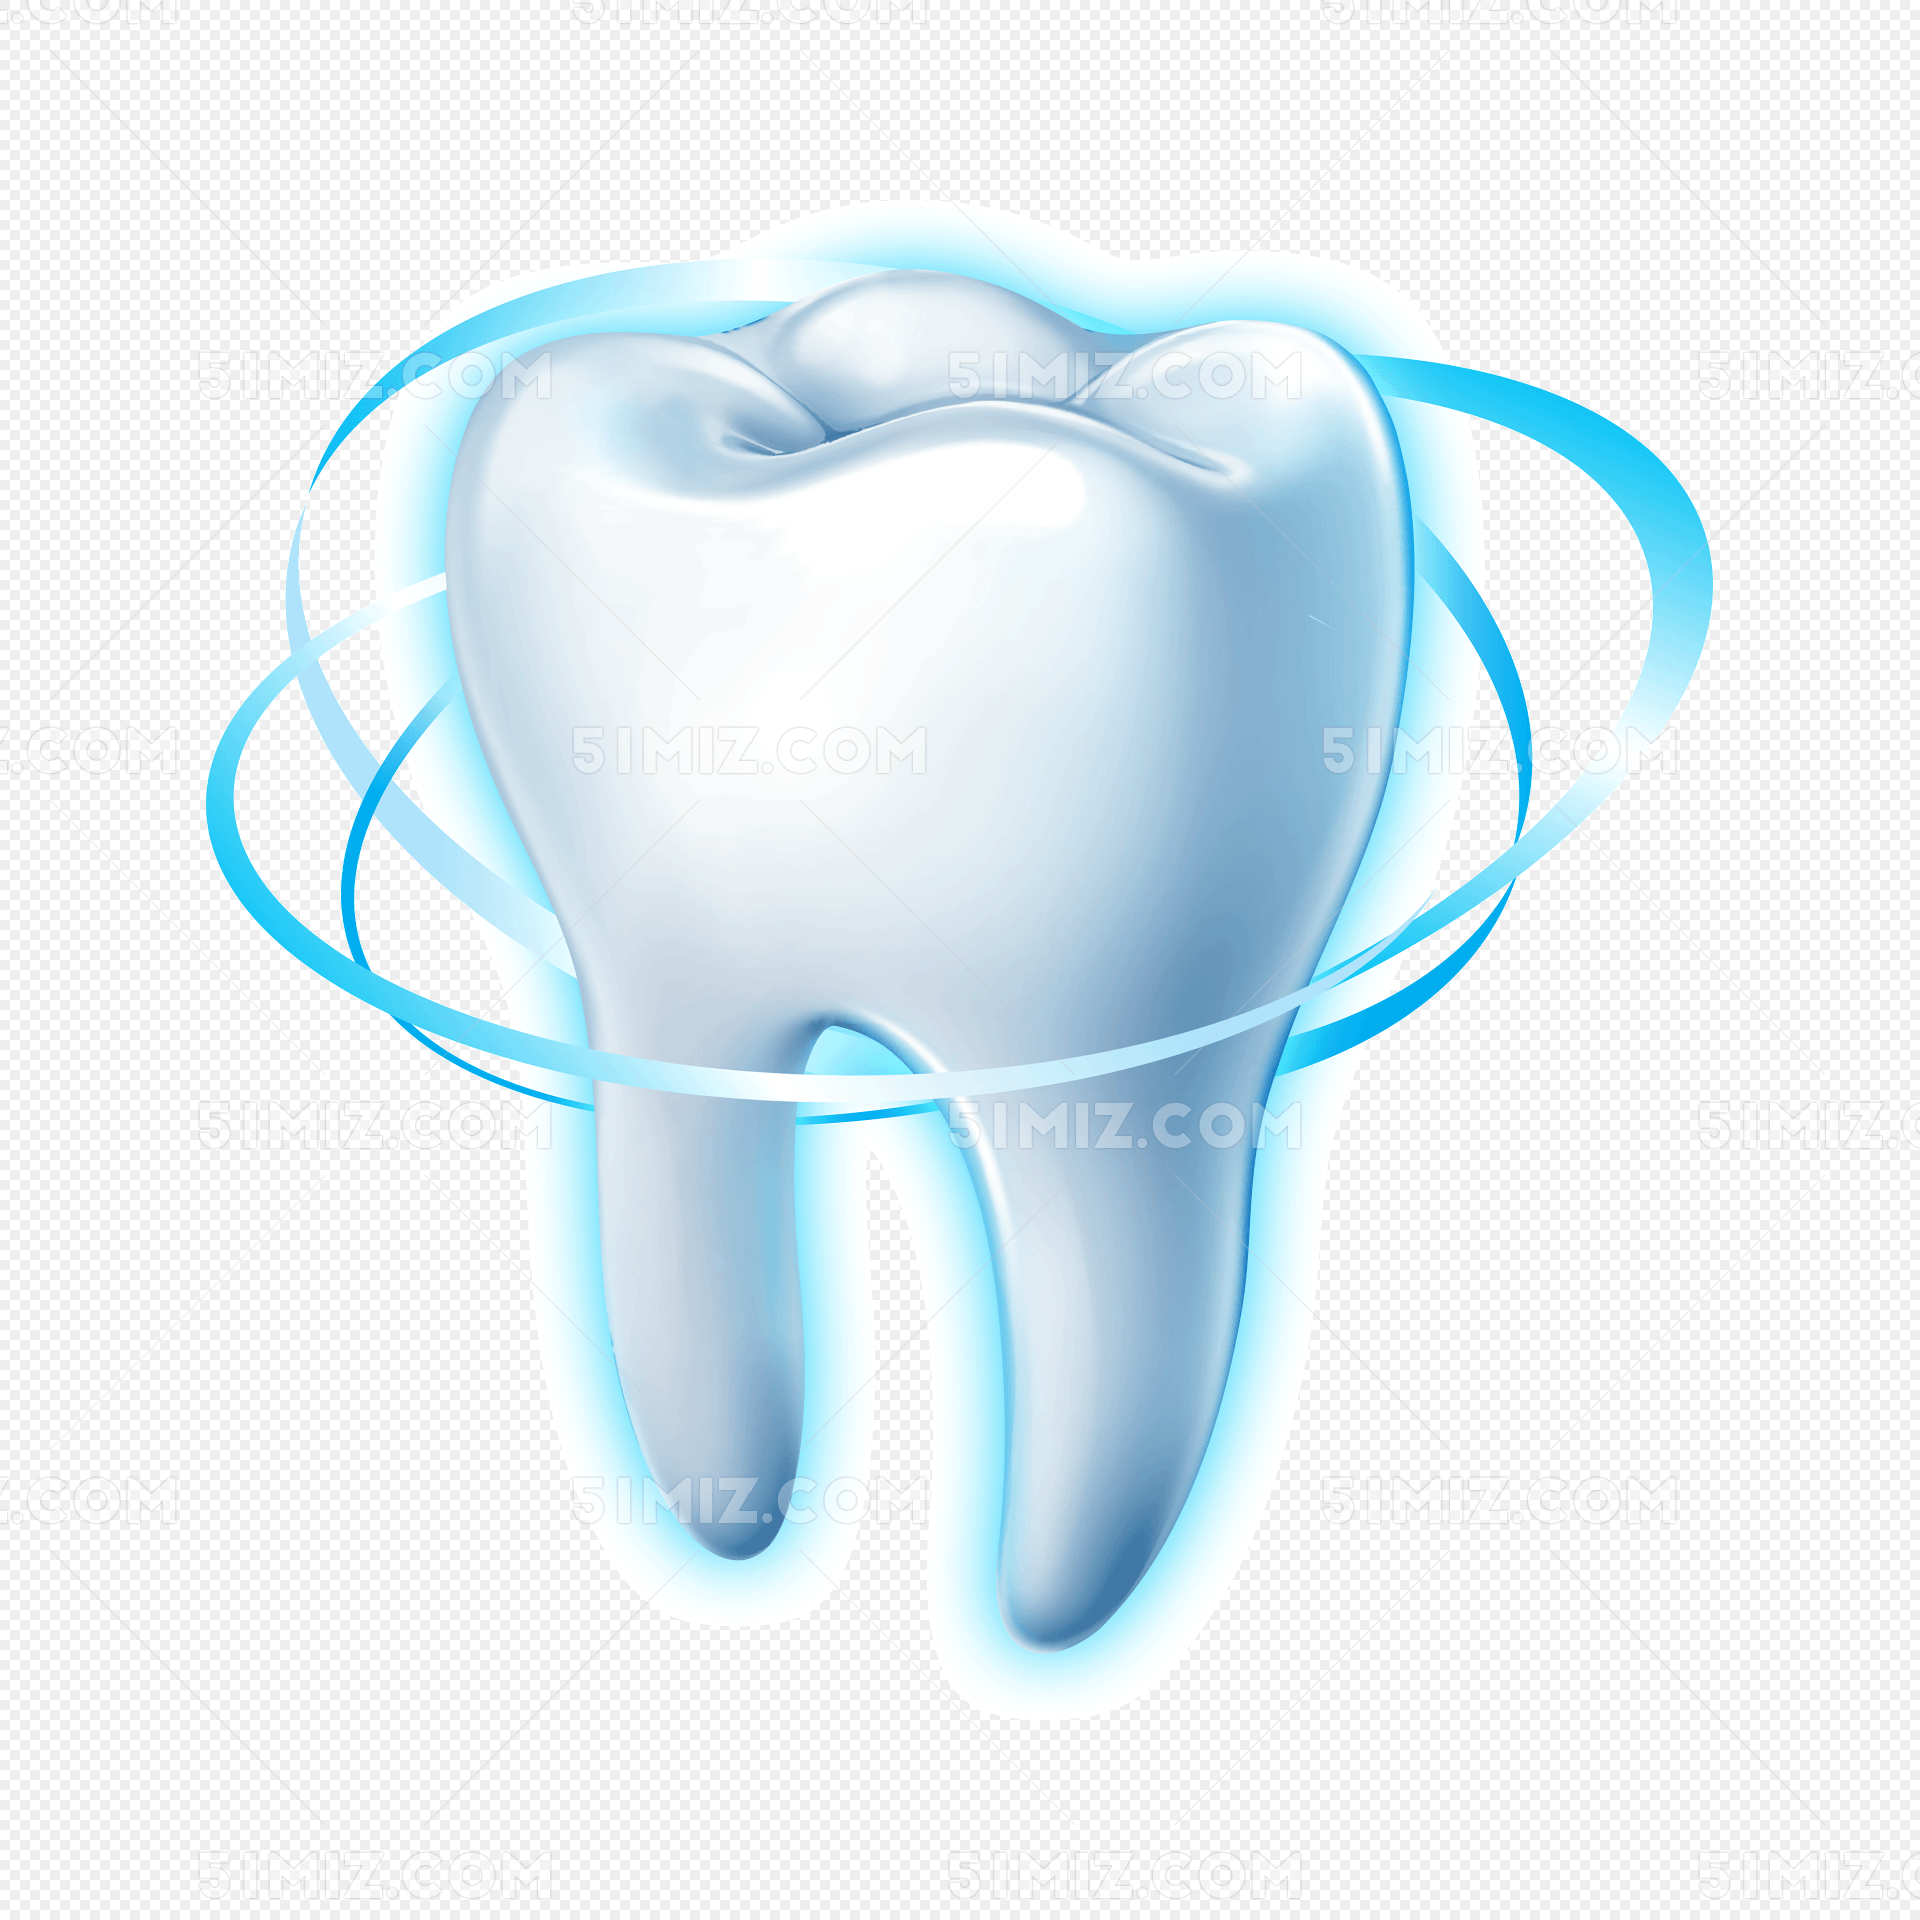 坚固牙齿保护牙齿